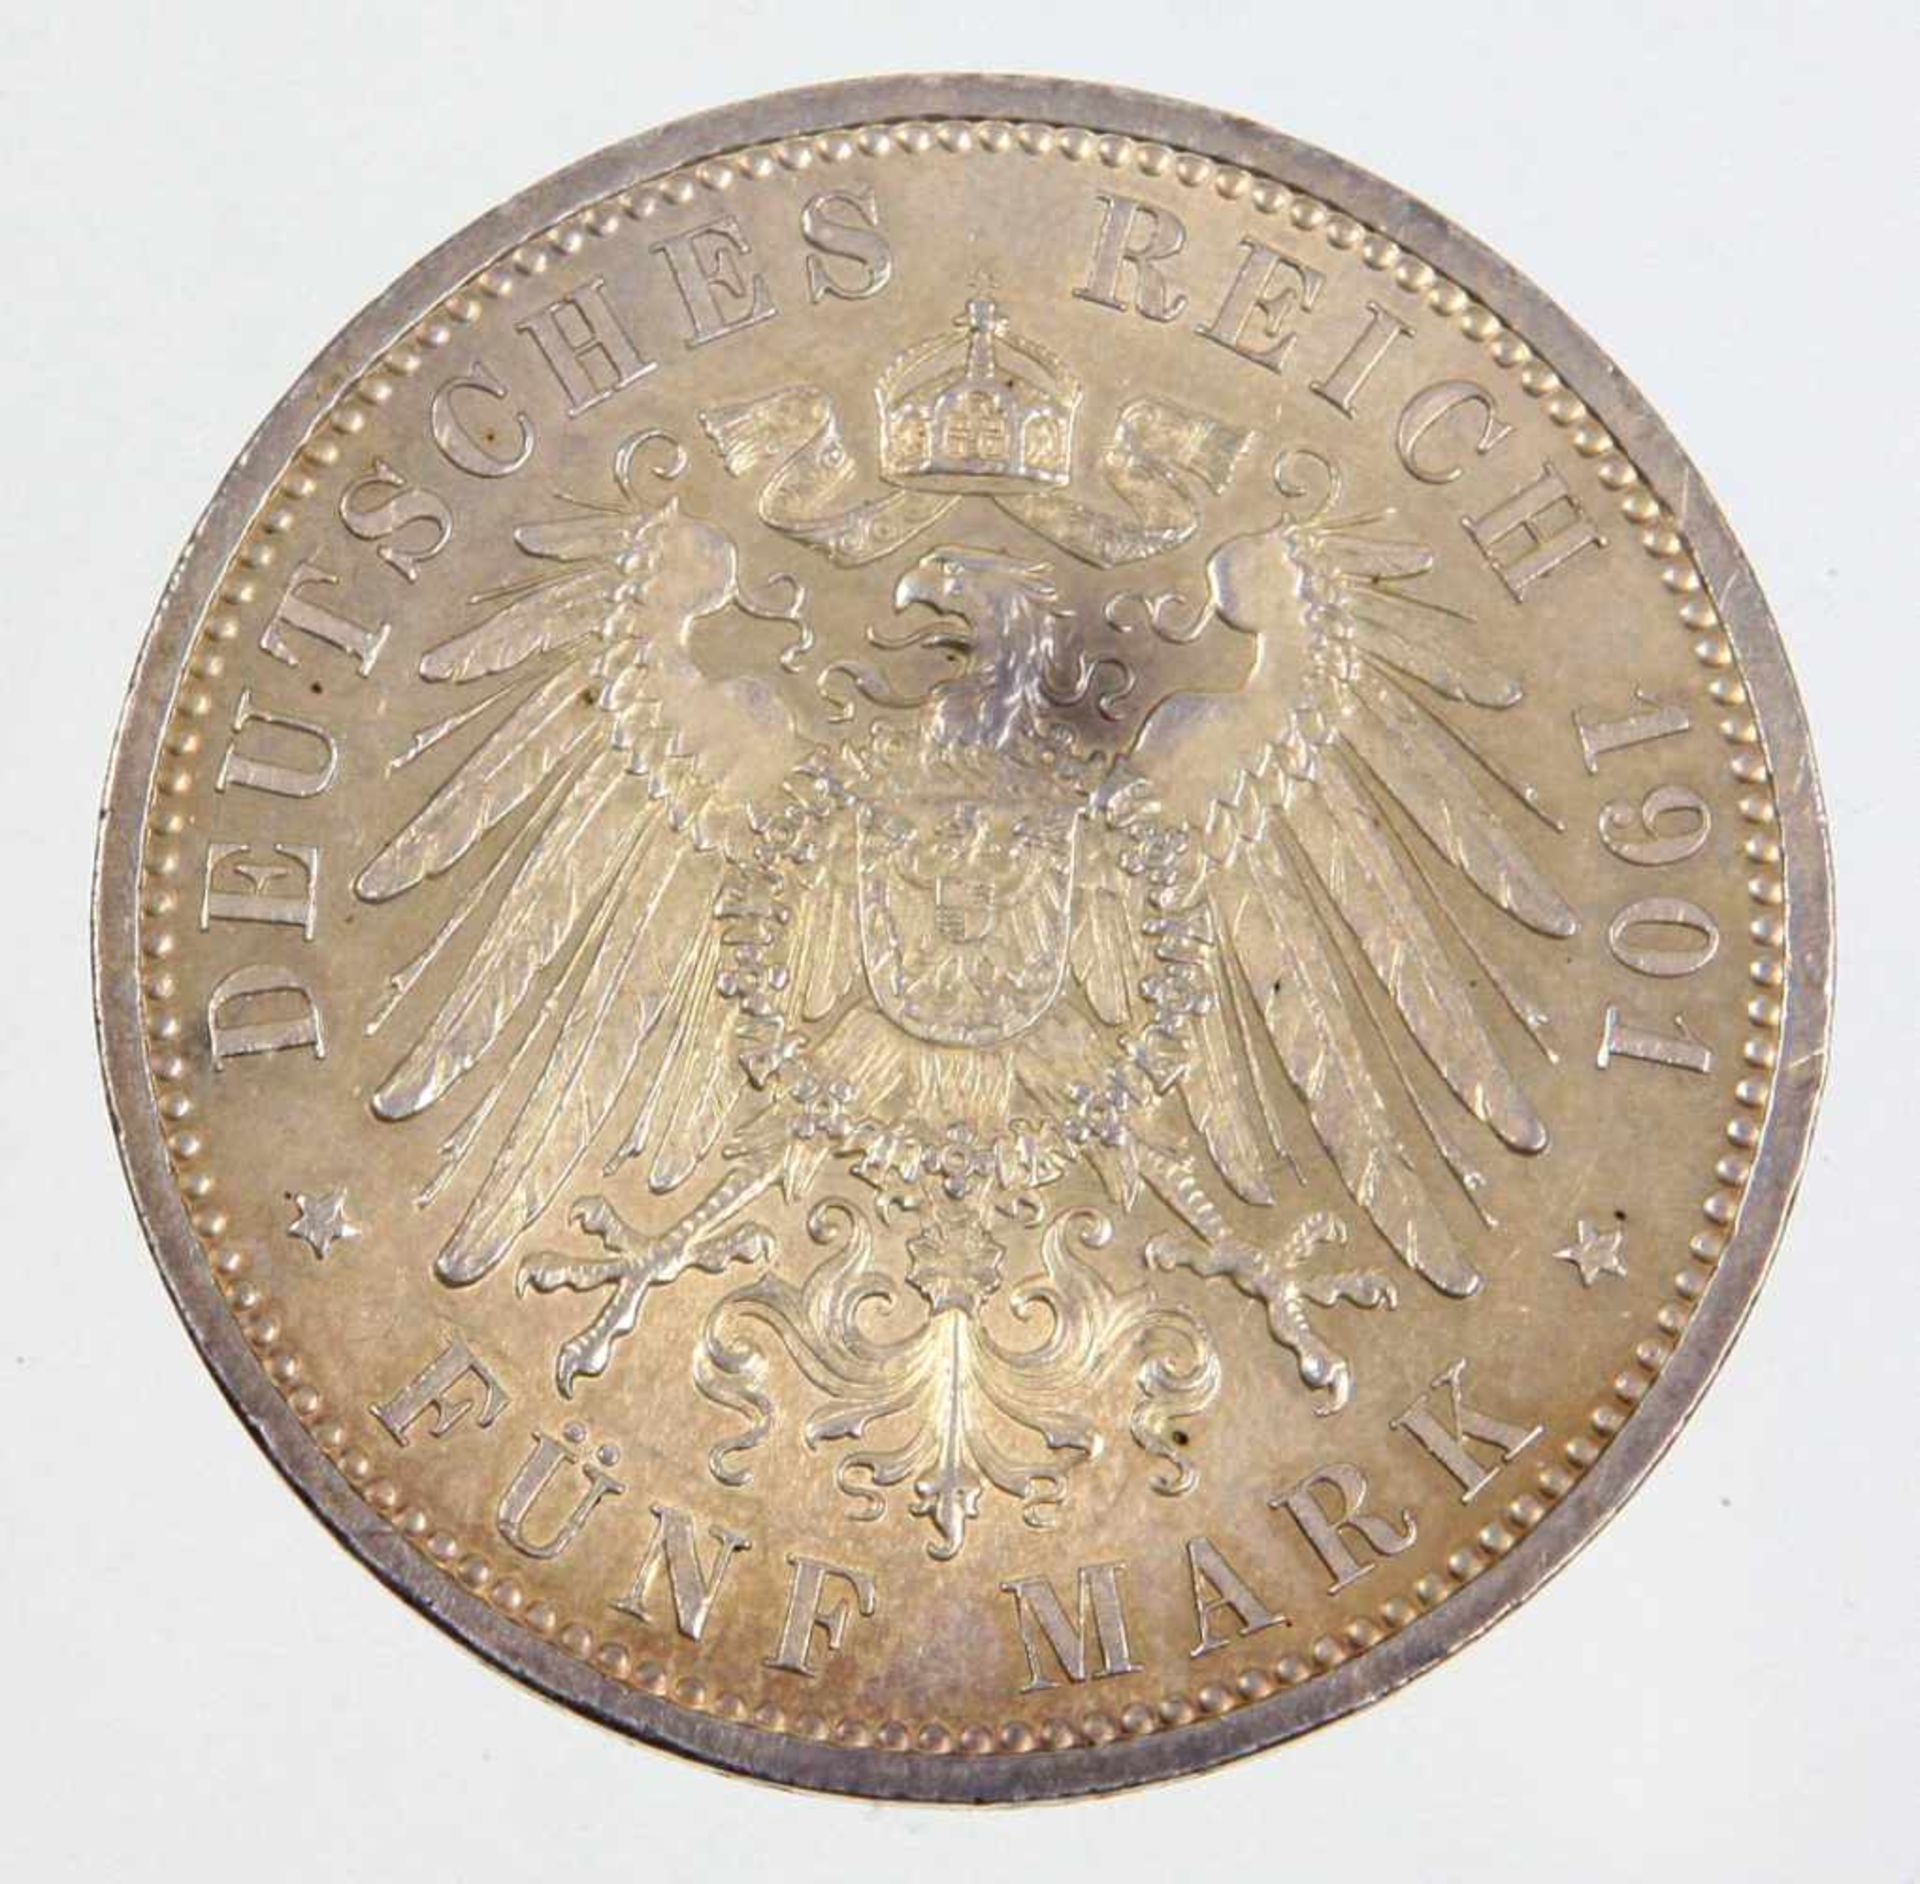 5 Mark 200 Jahre Königreich Preussen 1901Silbermünze Fünf Mark Deutsches Reich 1901, so um gekrönten - Bild 2 aus 2